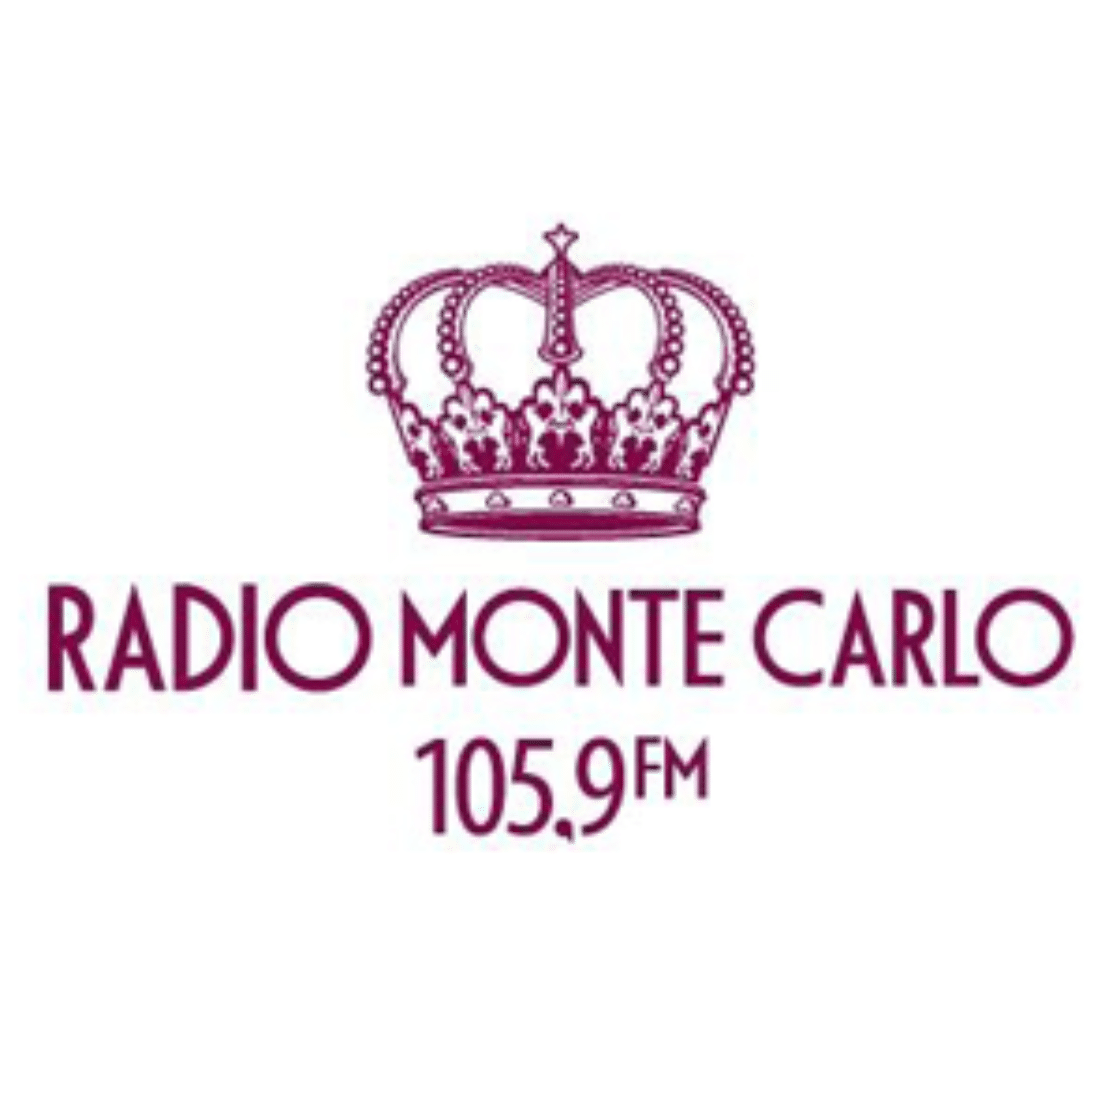 Радио черкесск 105.9 слушать. Радио Monte Carlo логотип. Значки радио Монте Карло. Monte Carlo 105.9. Радио Монте-Карло Санкт-Петербург.